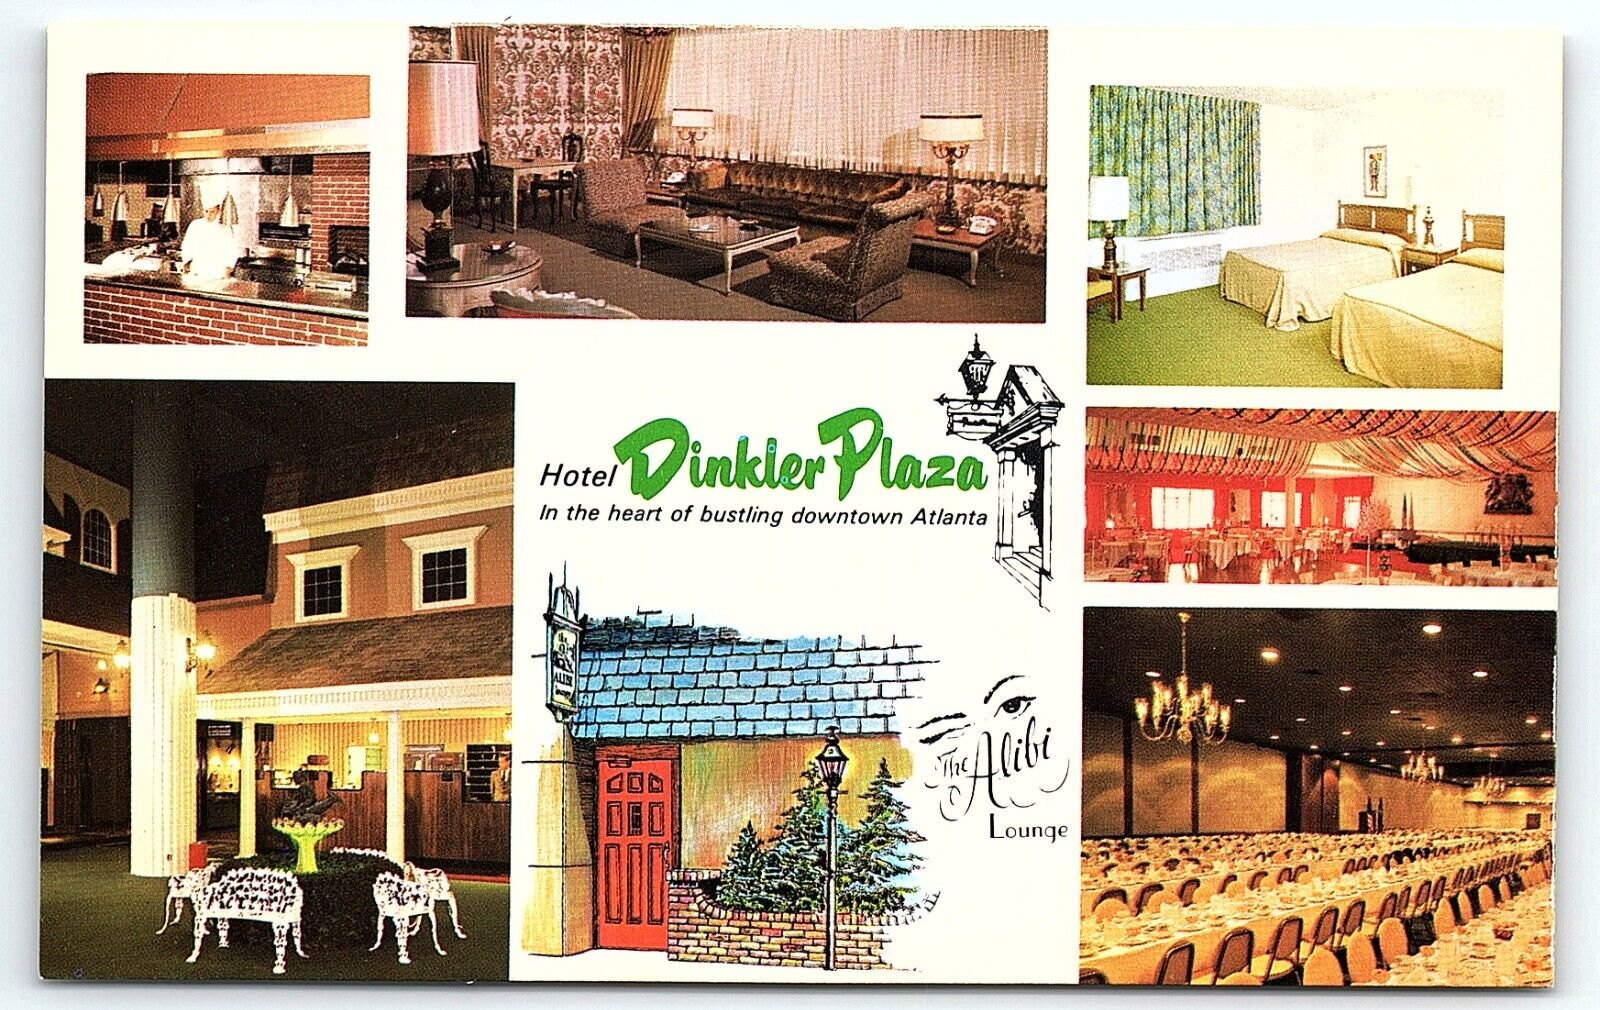 1950s ATLANTA GA HOTEL DINKLER PLAZA ALIBI LOUNGE MULTI-VIEW POSTCARD P4658